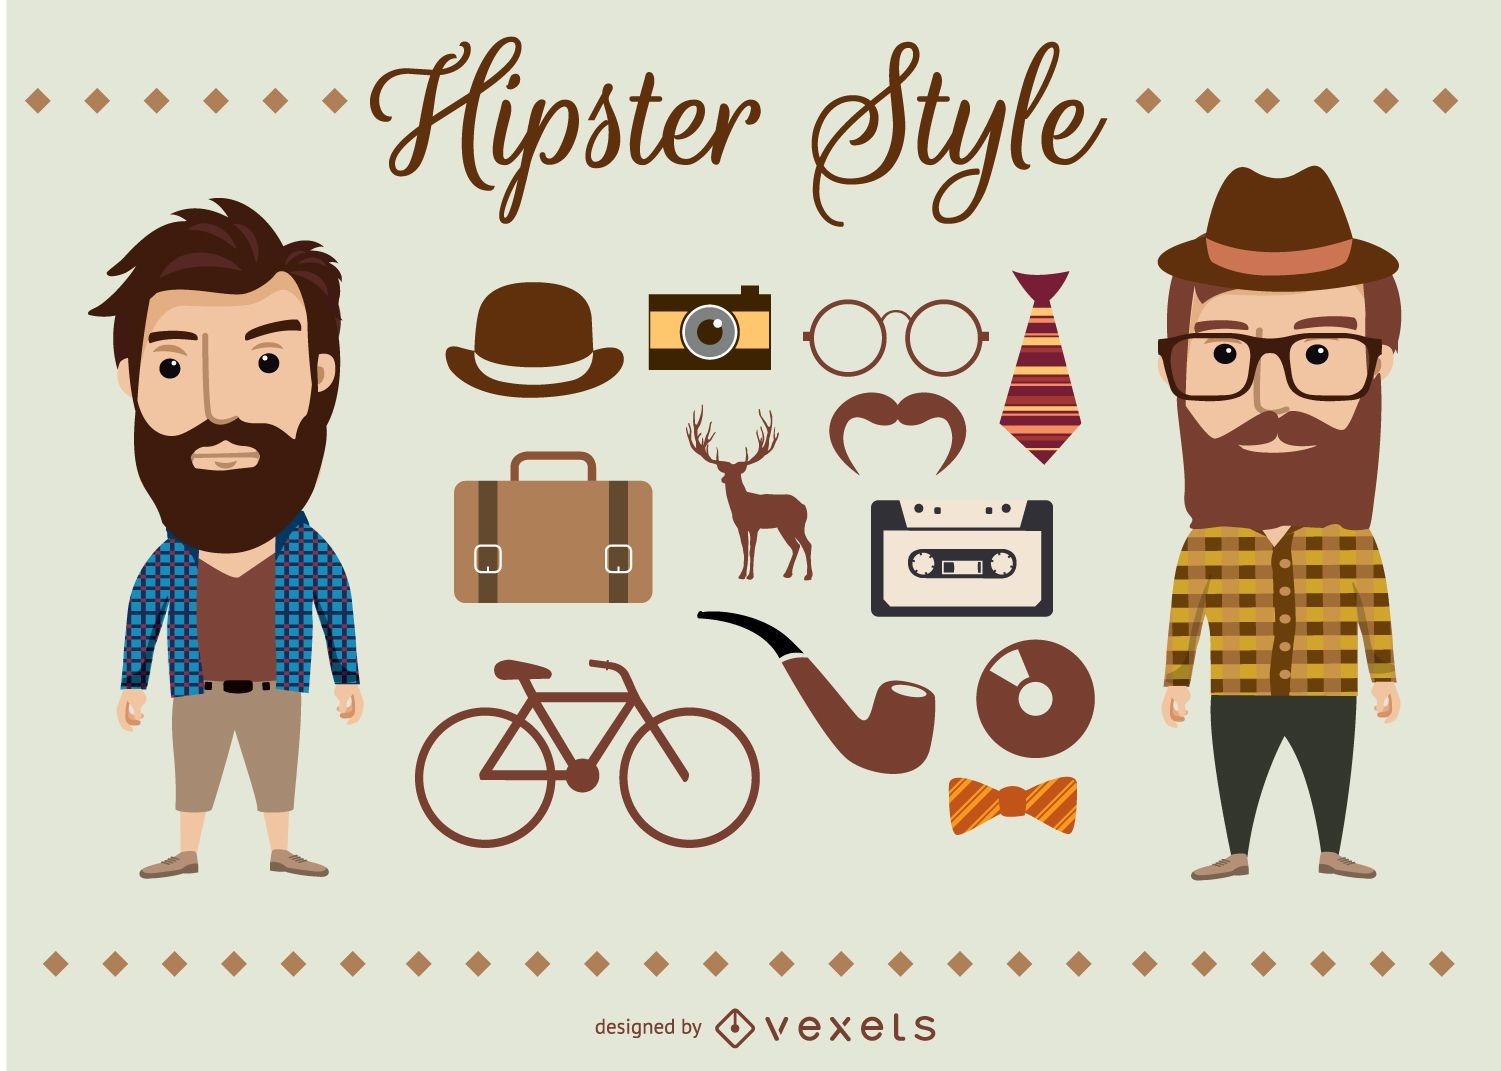 Elementos y personajes hipster